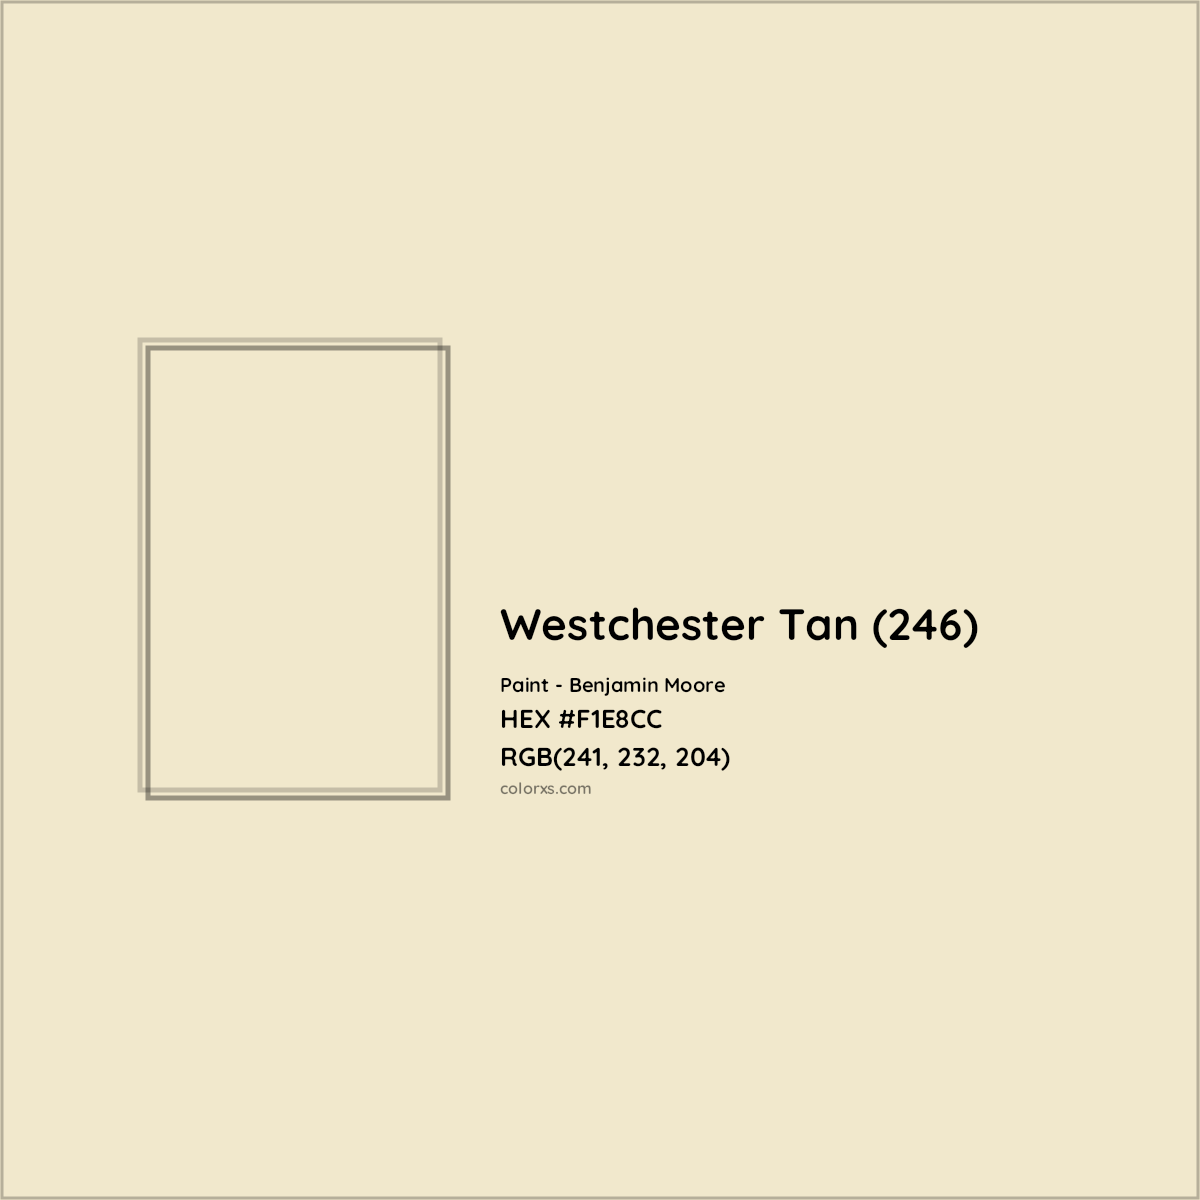 HEX #F1E8CC Westchester Tan (246) Paint Benjamin Moore - Color Code